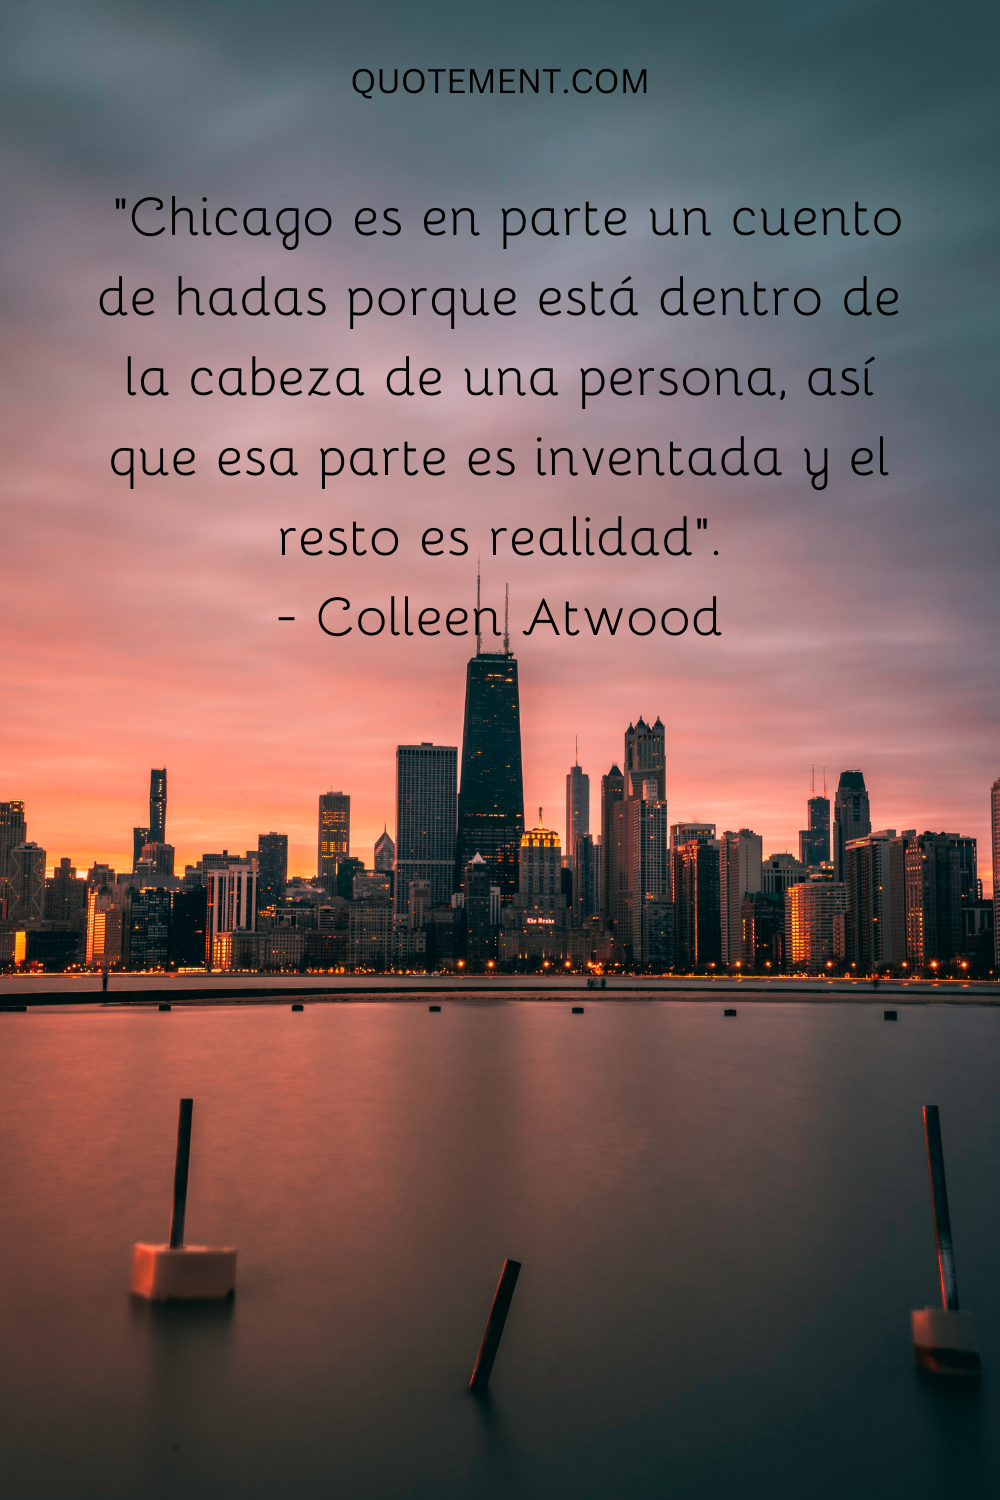 "Chicago es en parte un cuento de hadas porque está dentro de la cabeza de una persona, así que esa parte es inventada y el resto es realidad". - Colleen Atwood